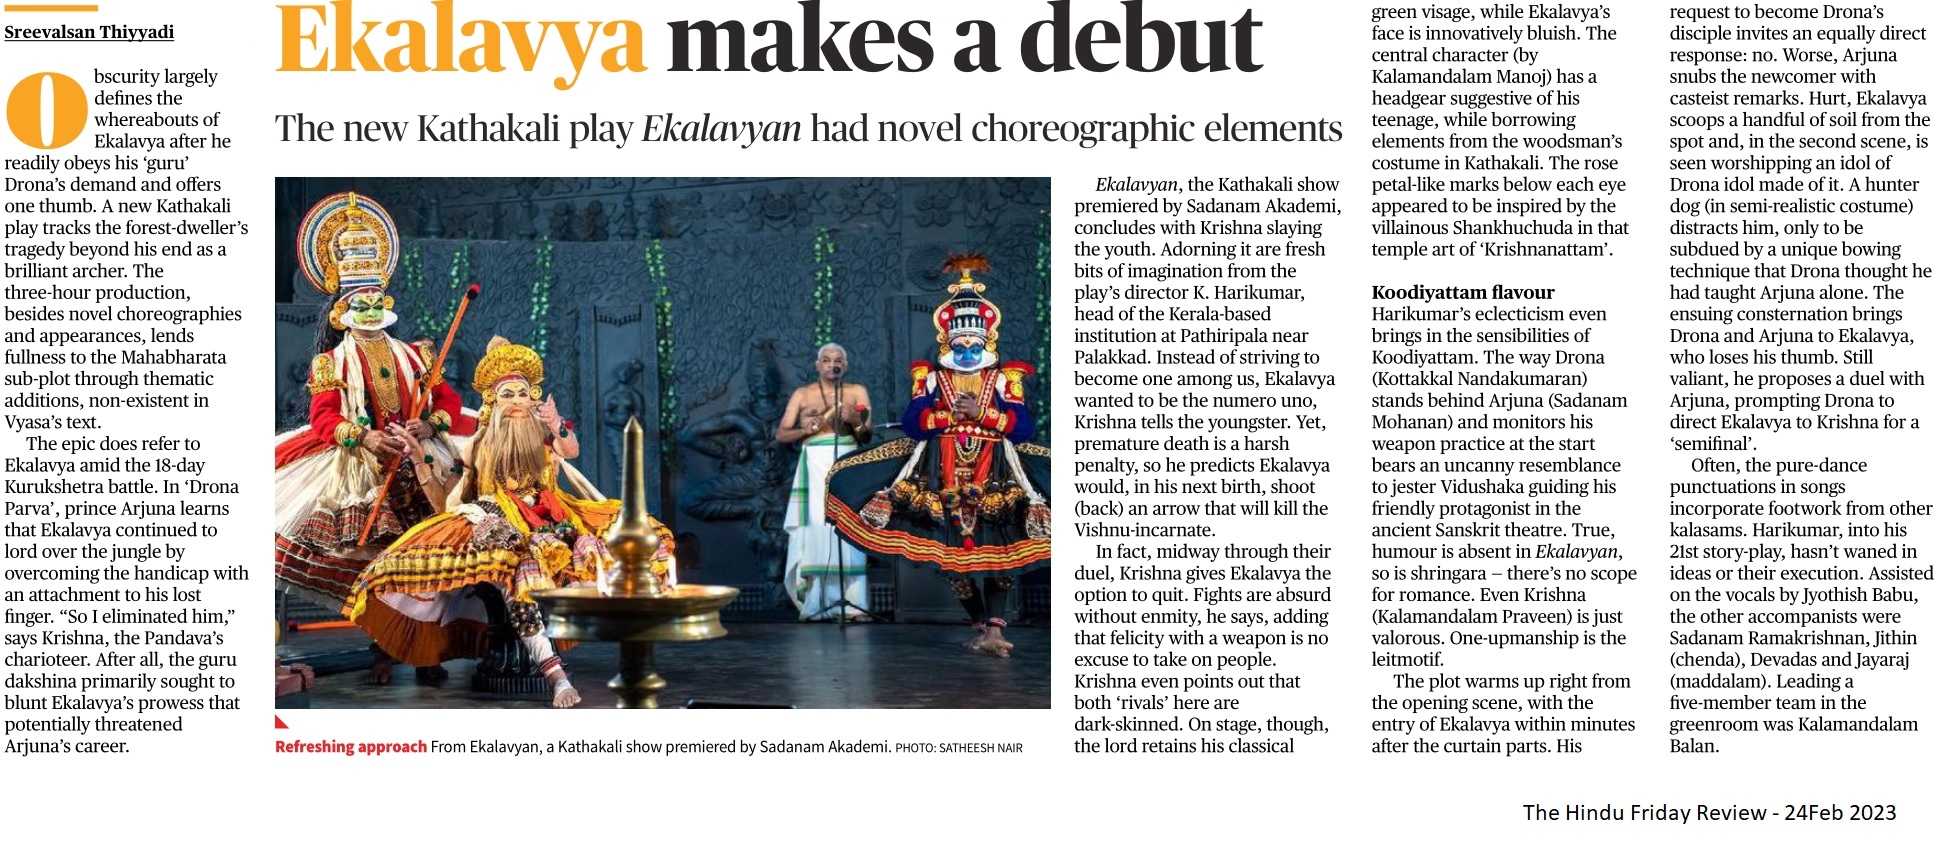 Ekalavya makes a debut - Sreevalsan Thiyyadi